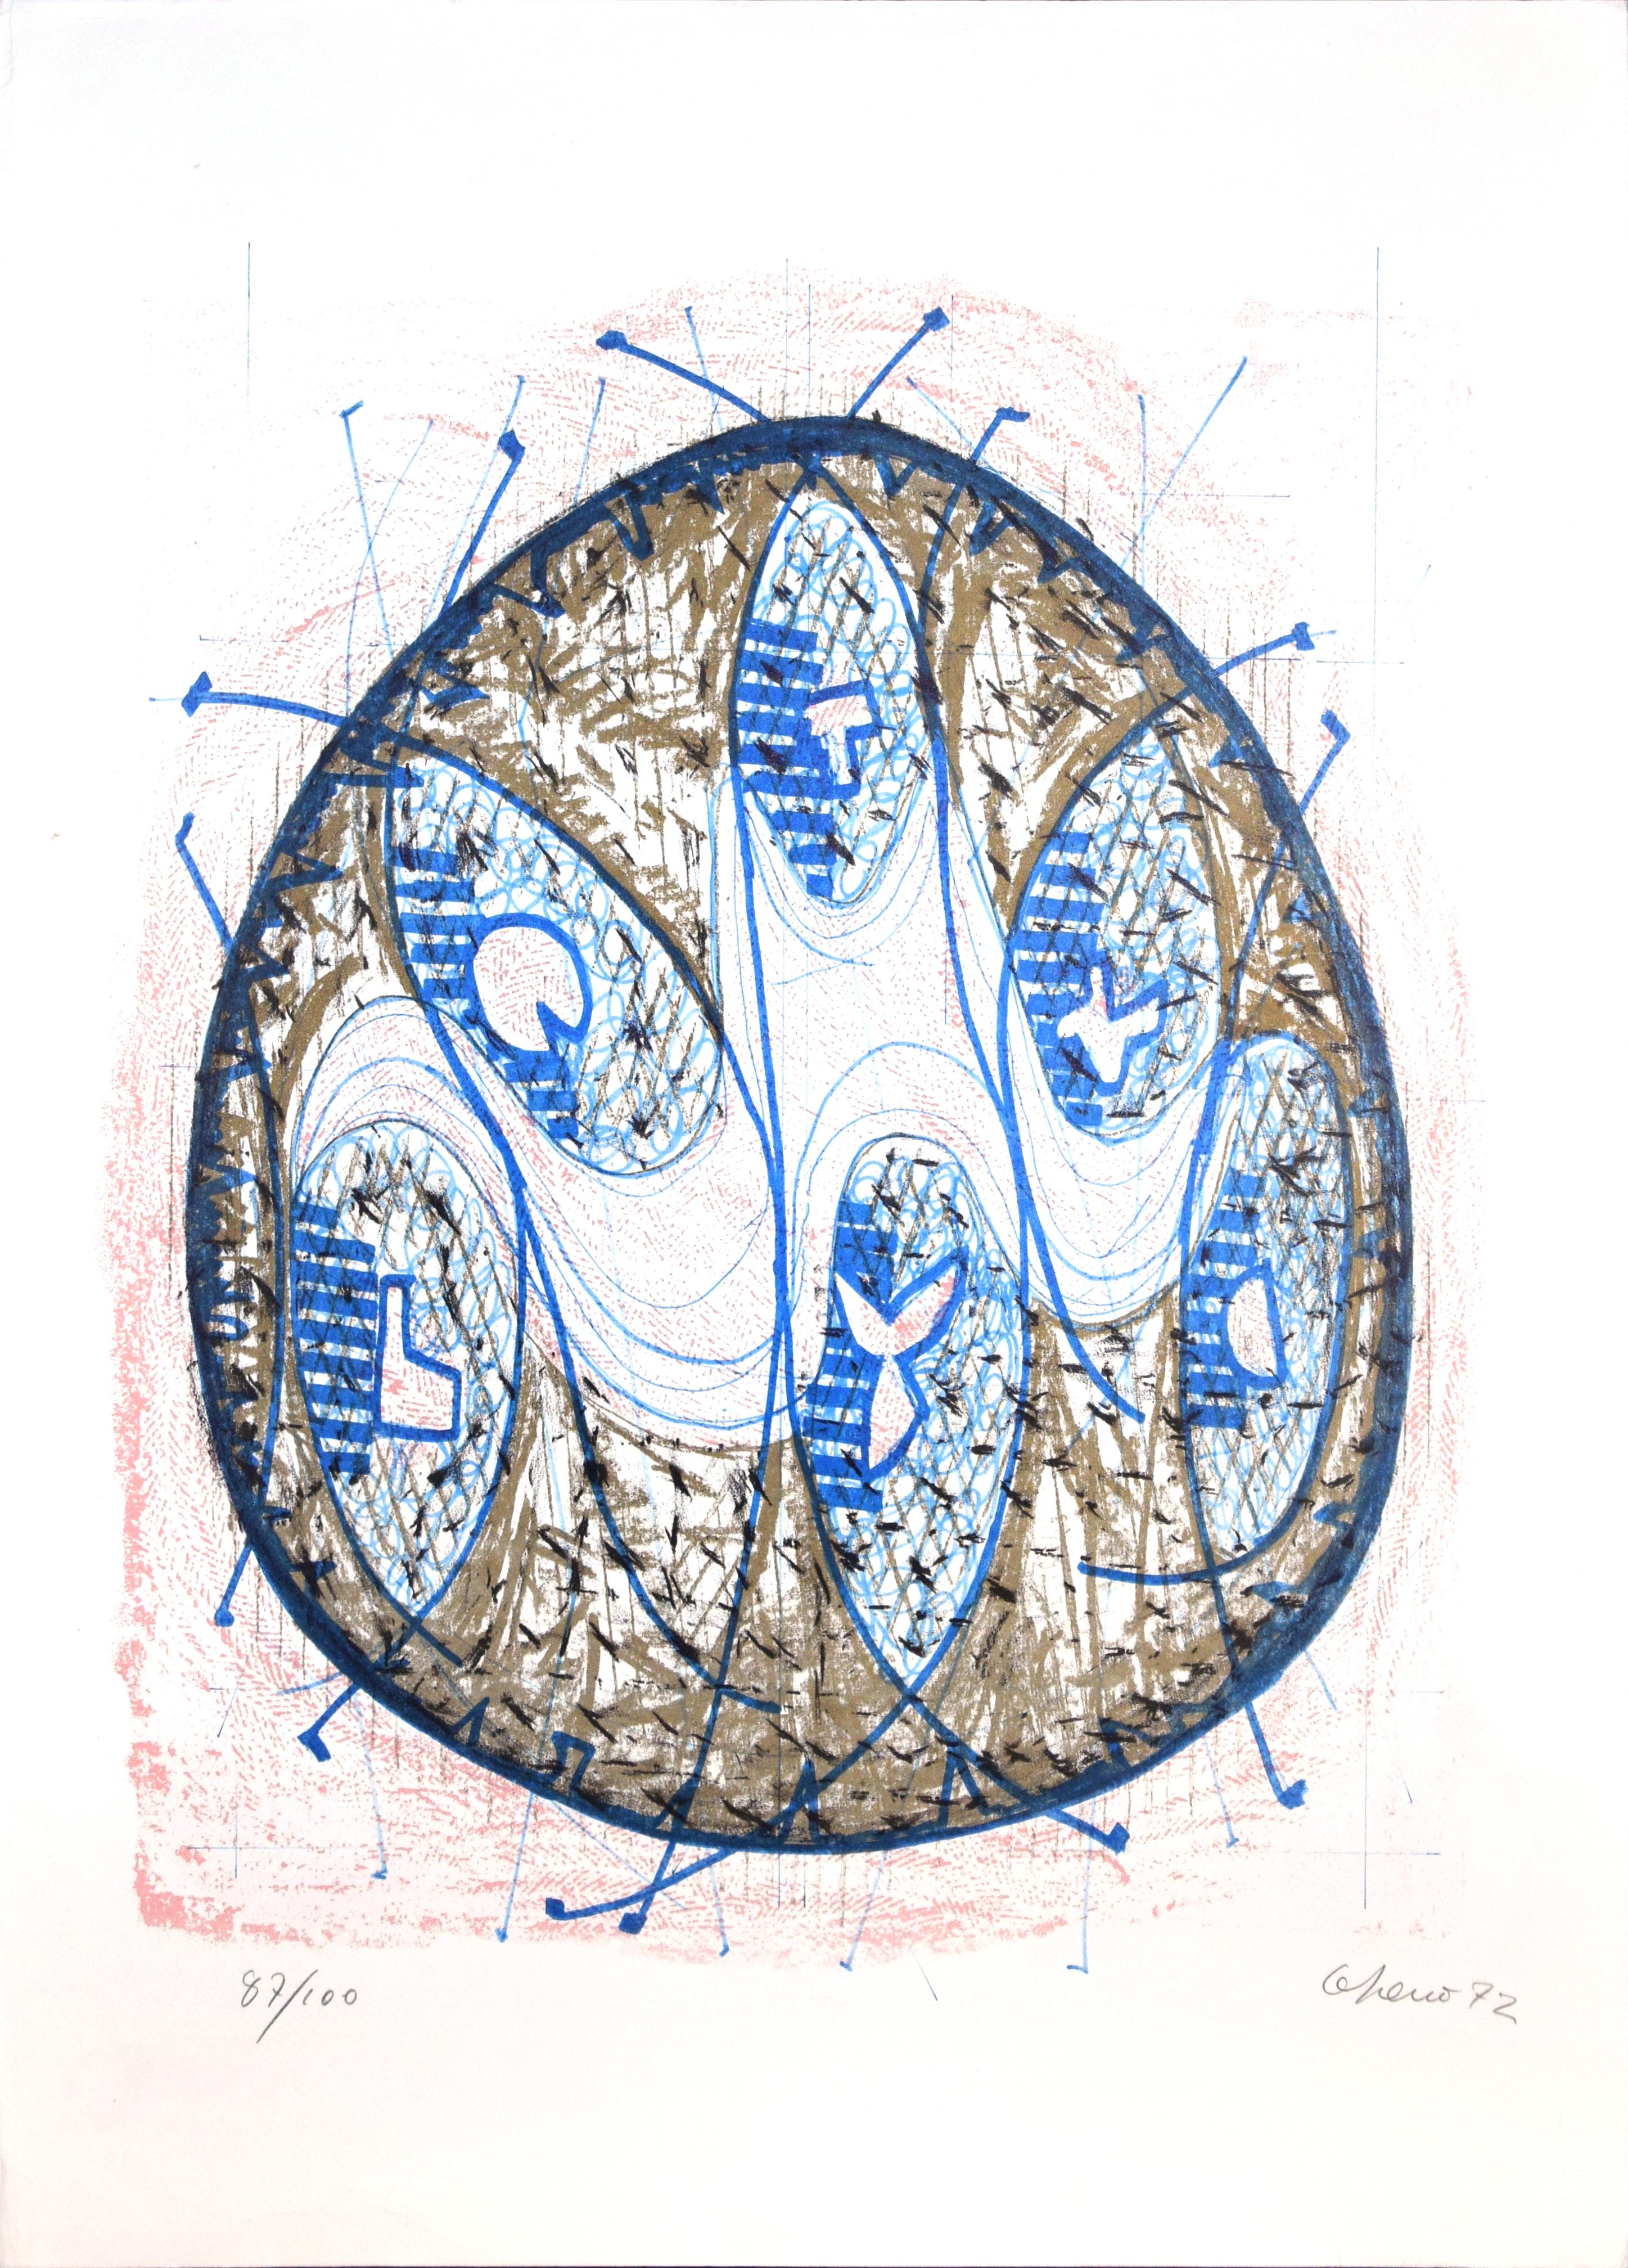 Grey And Blue Composition est une lithographie originale en couleur réalisée par Luigi Gheno en 1972.
Signé et daté au crayon par l'artiste en bas à droite. Numéroté en bas à gauche. Edition de 100 exemplaires.
Très bonnes conditions, à l'exception